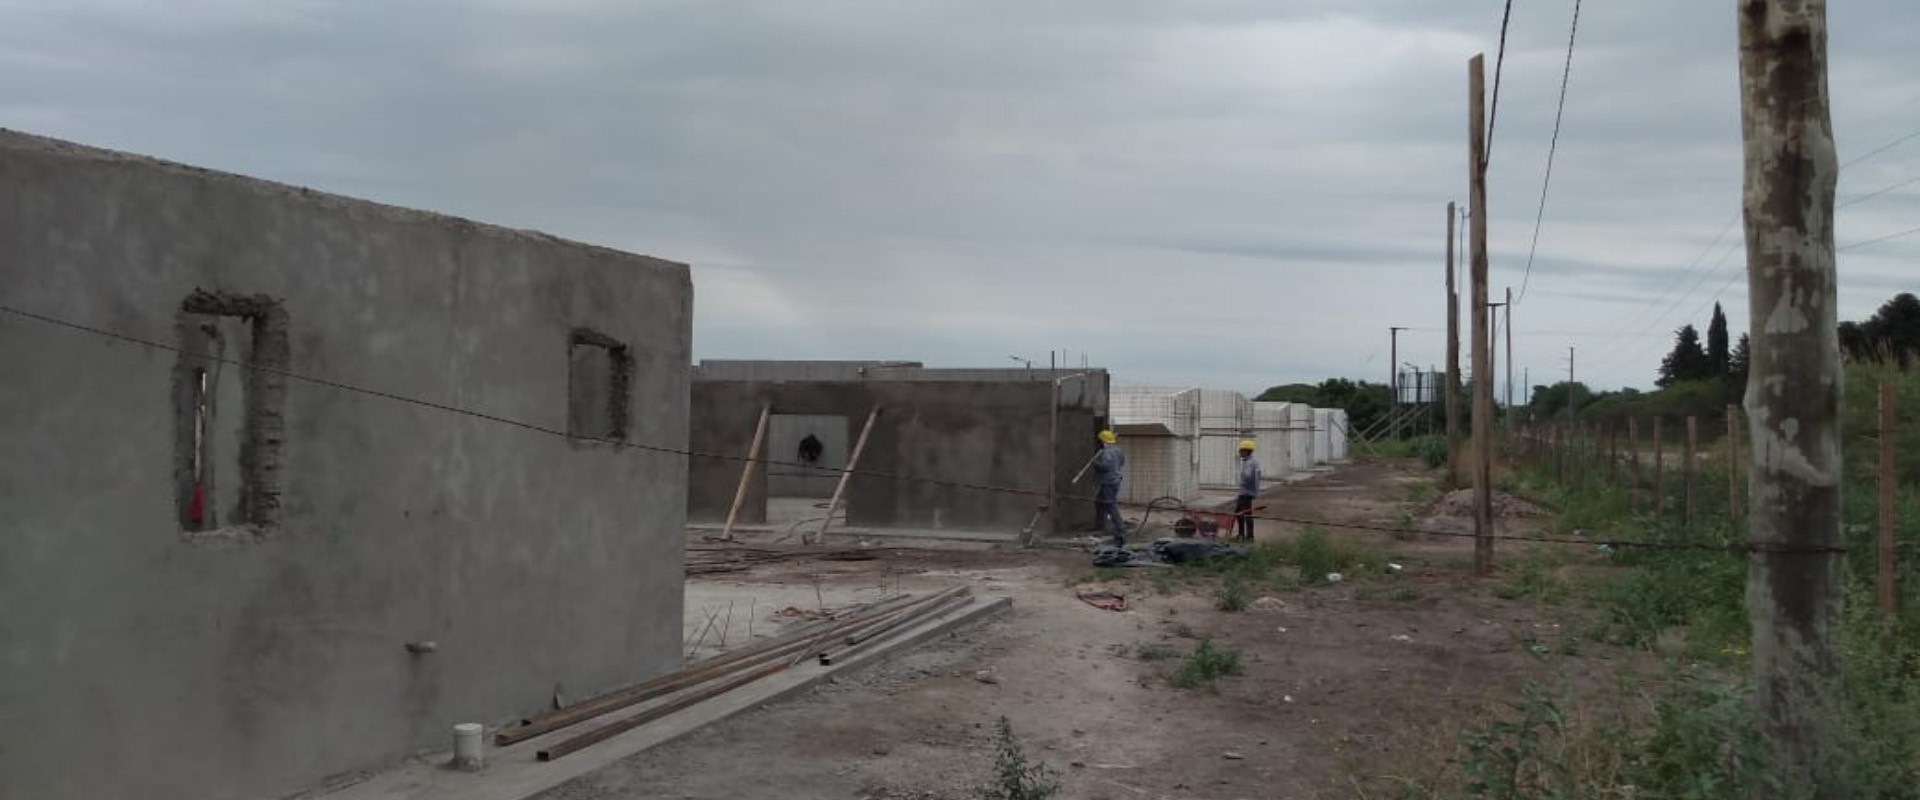 A buen ritmo la provincia construye 500 viviendas en Paraná